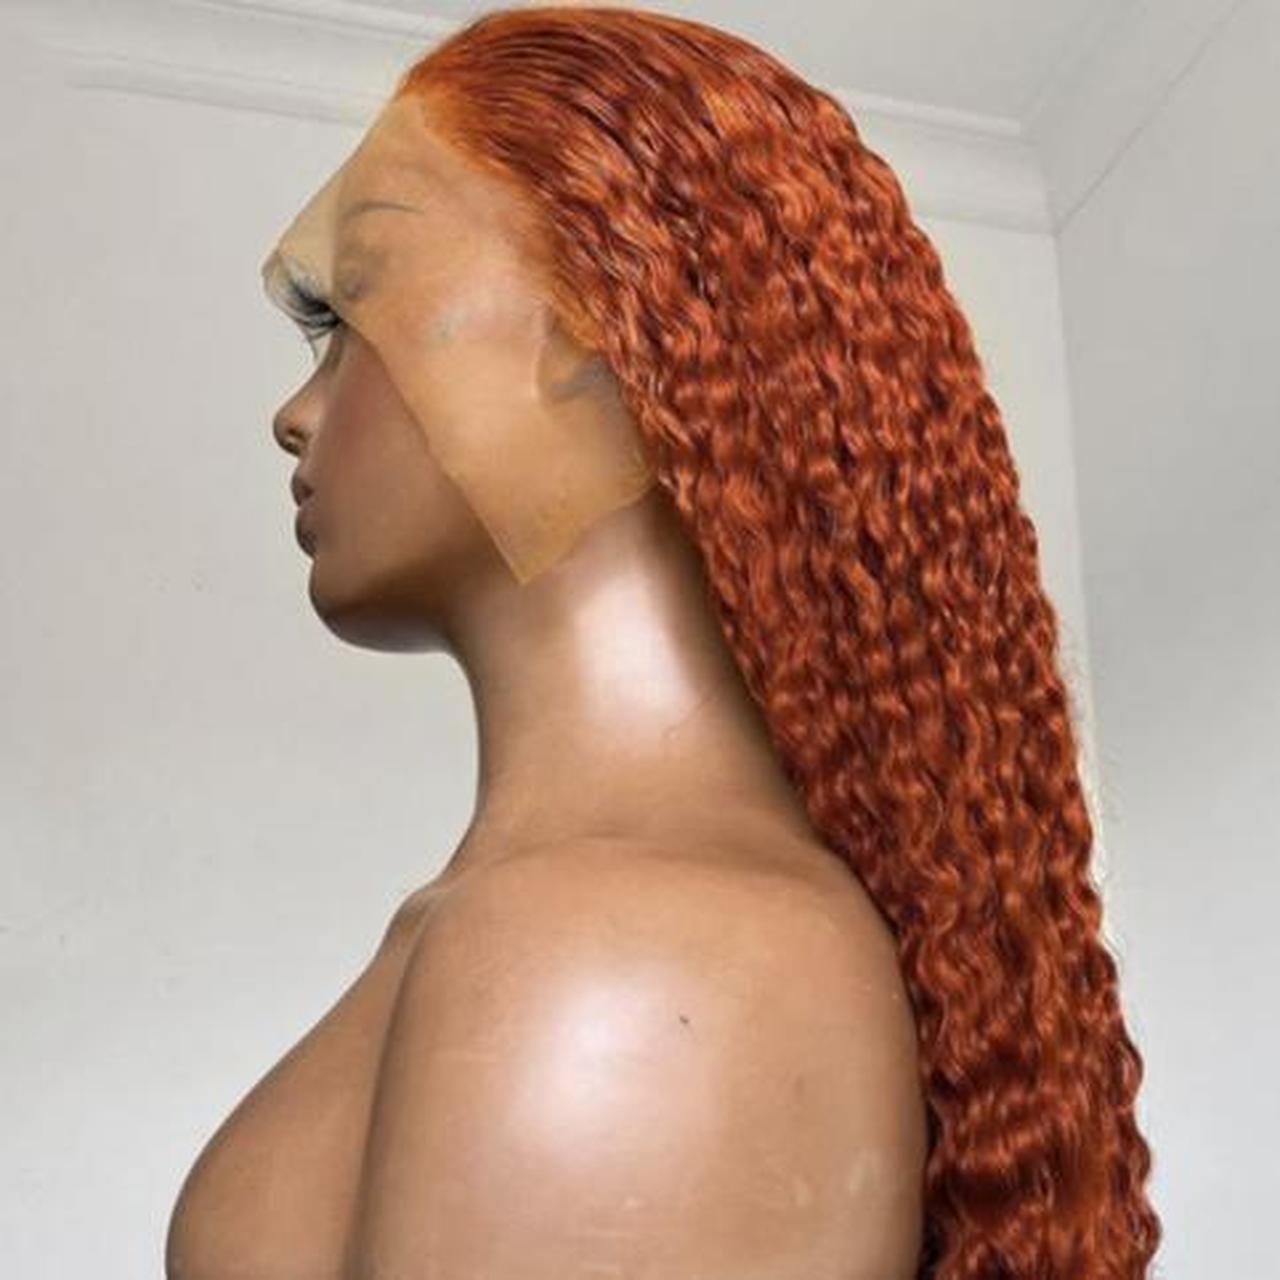 Women's Orange Hair-accessories (3)